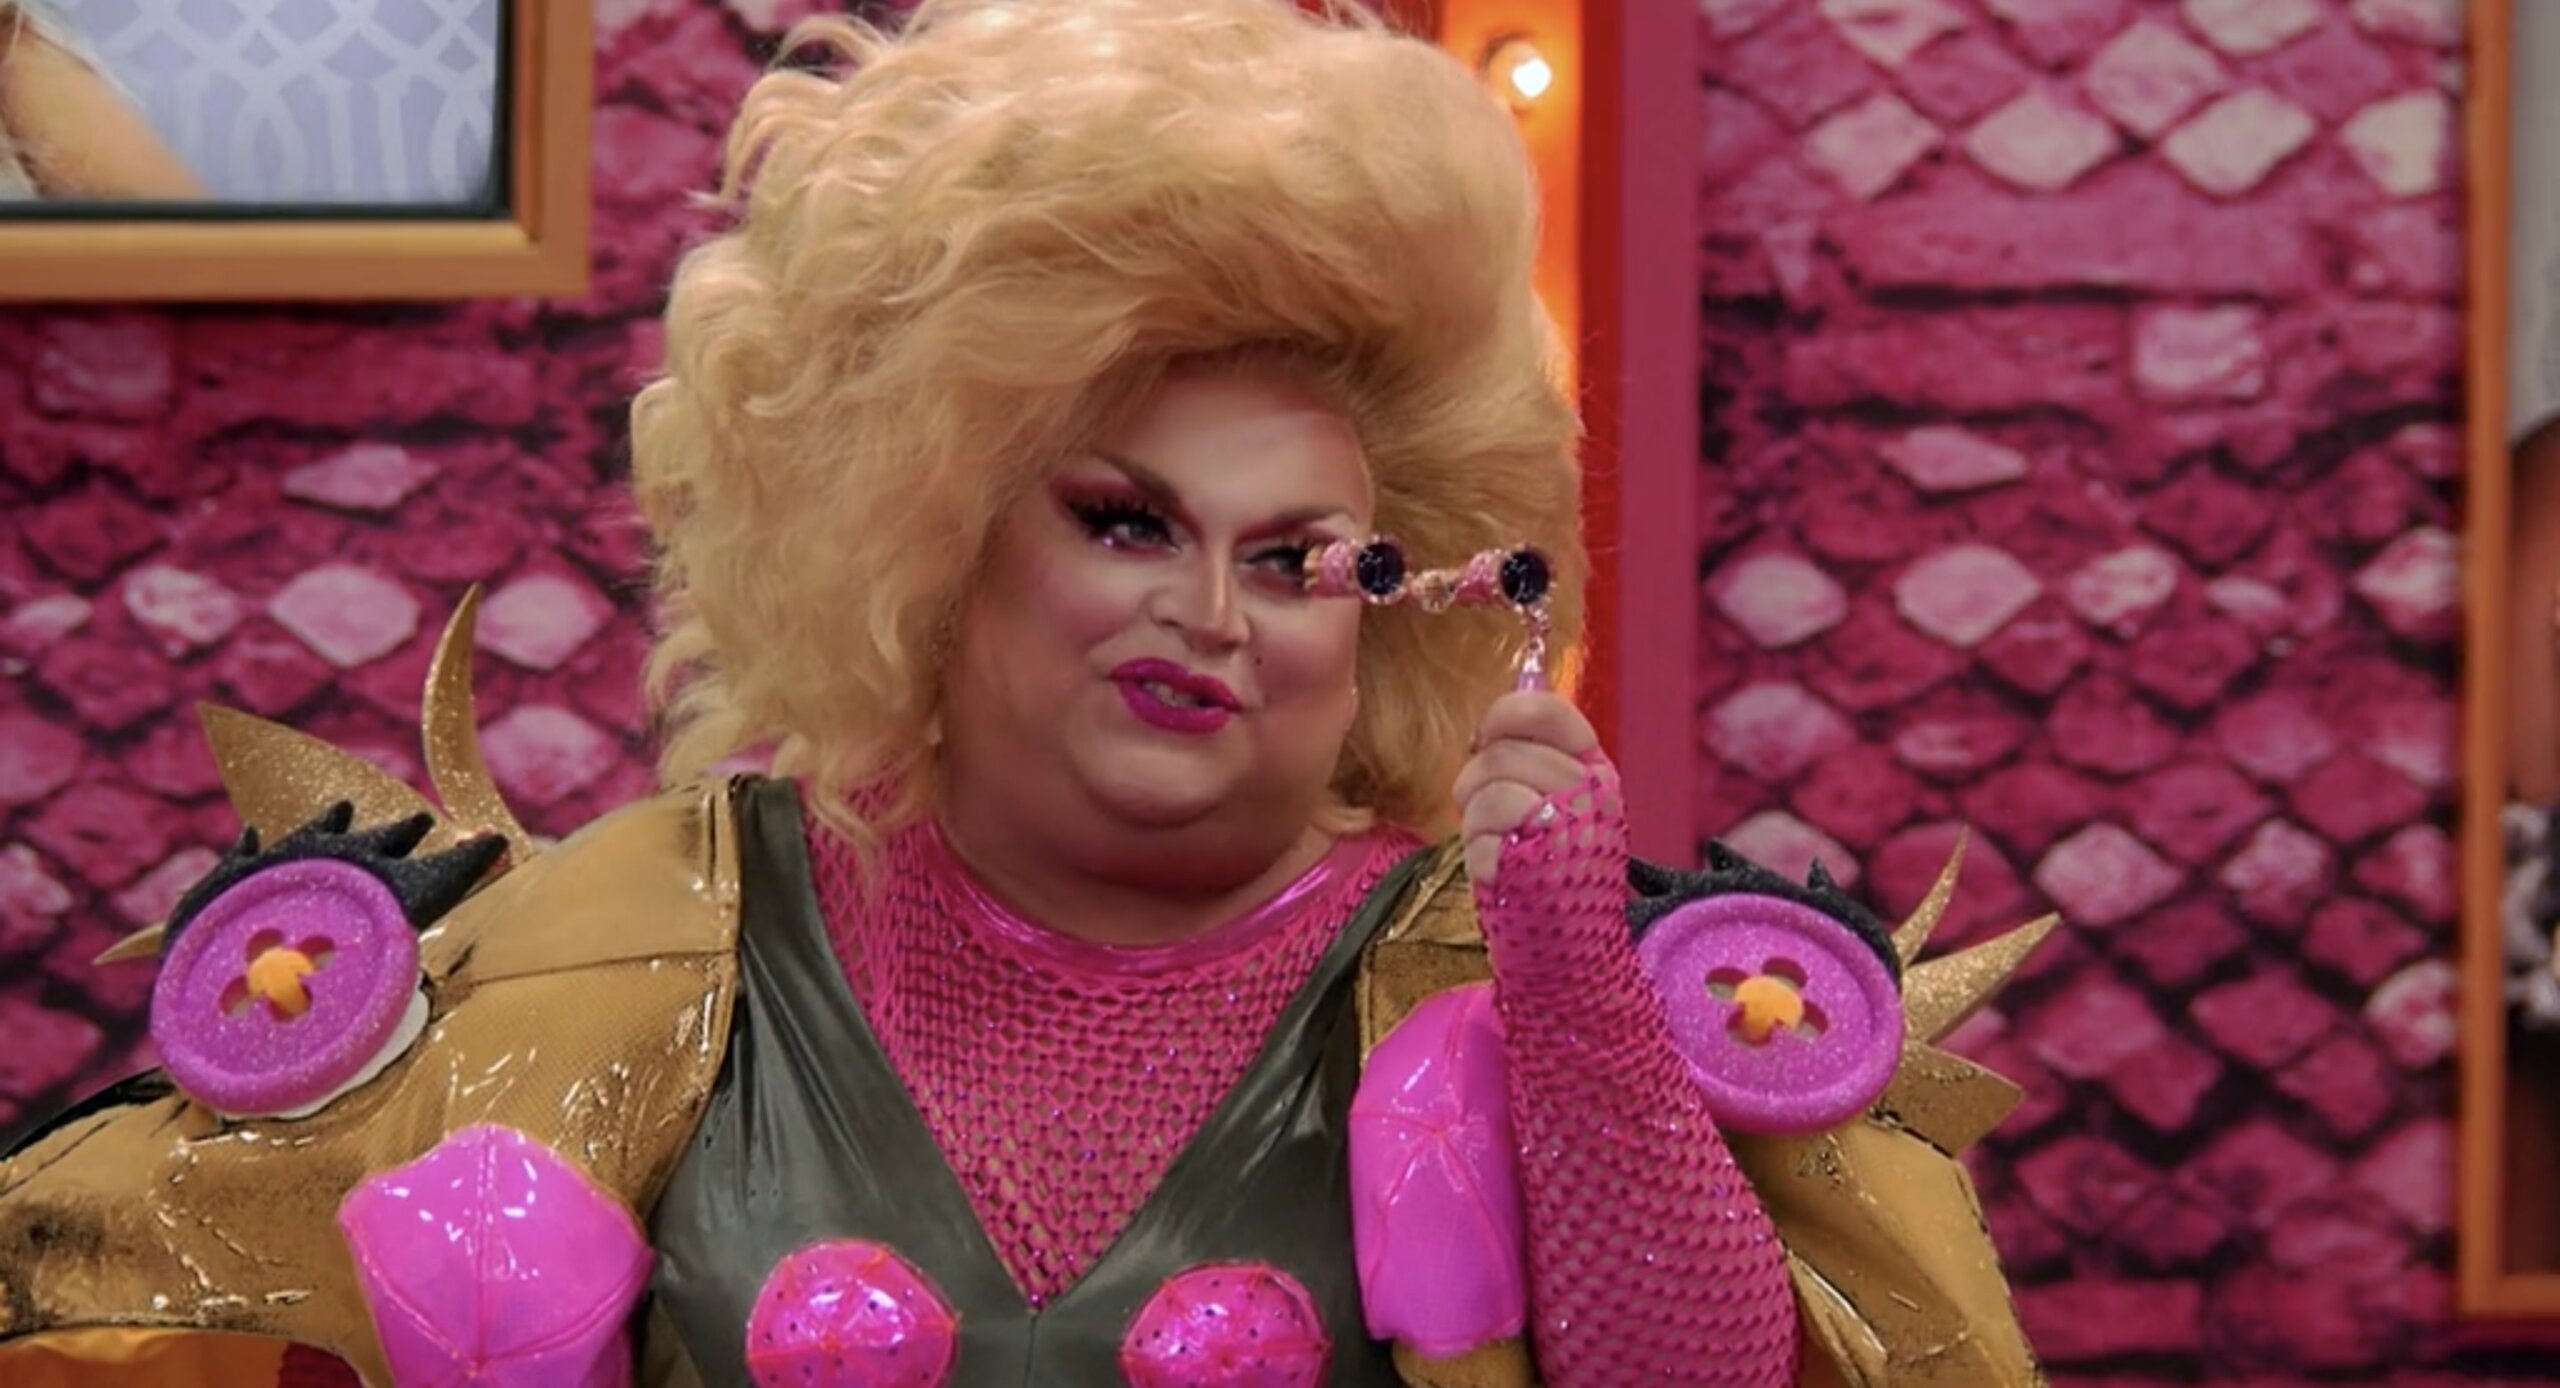 Cena do reality All Stars 6, mostra Ginger Minj, uma drag queen branca e gorda, vestida de sapo, segurando uma espécie de binóculos na frente do rosto e sorrido, se dirigindo à alguém que está na frente dela.